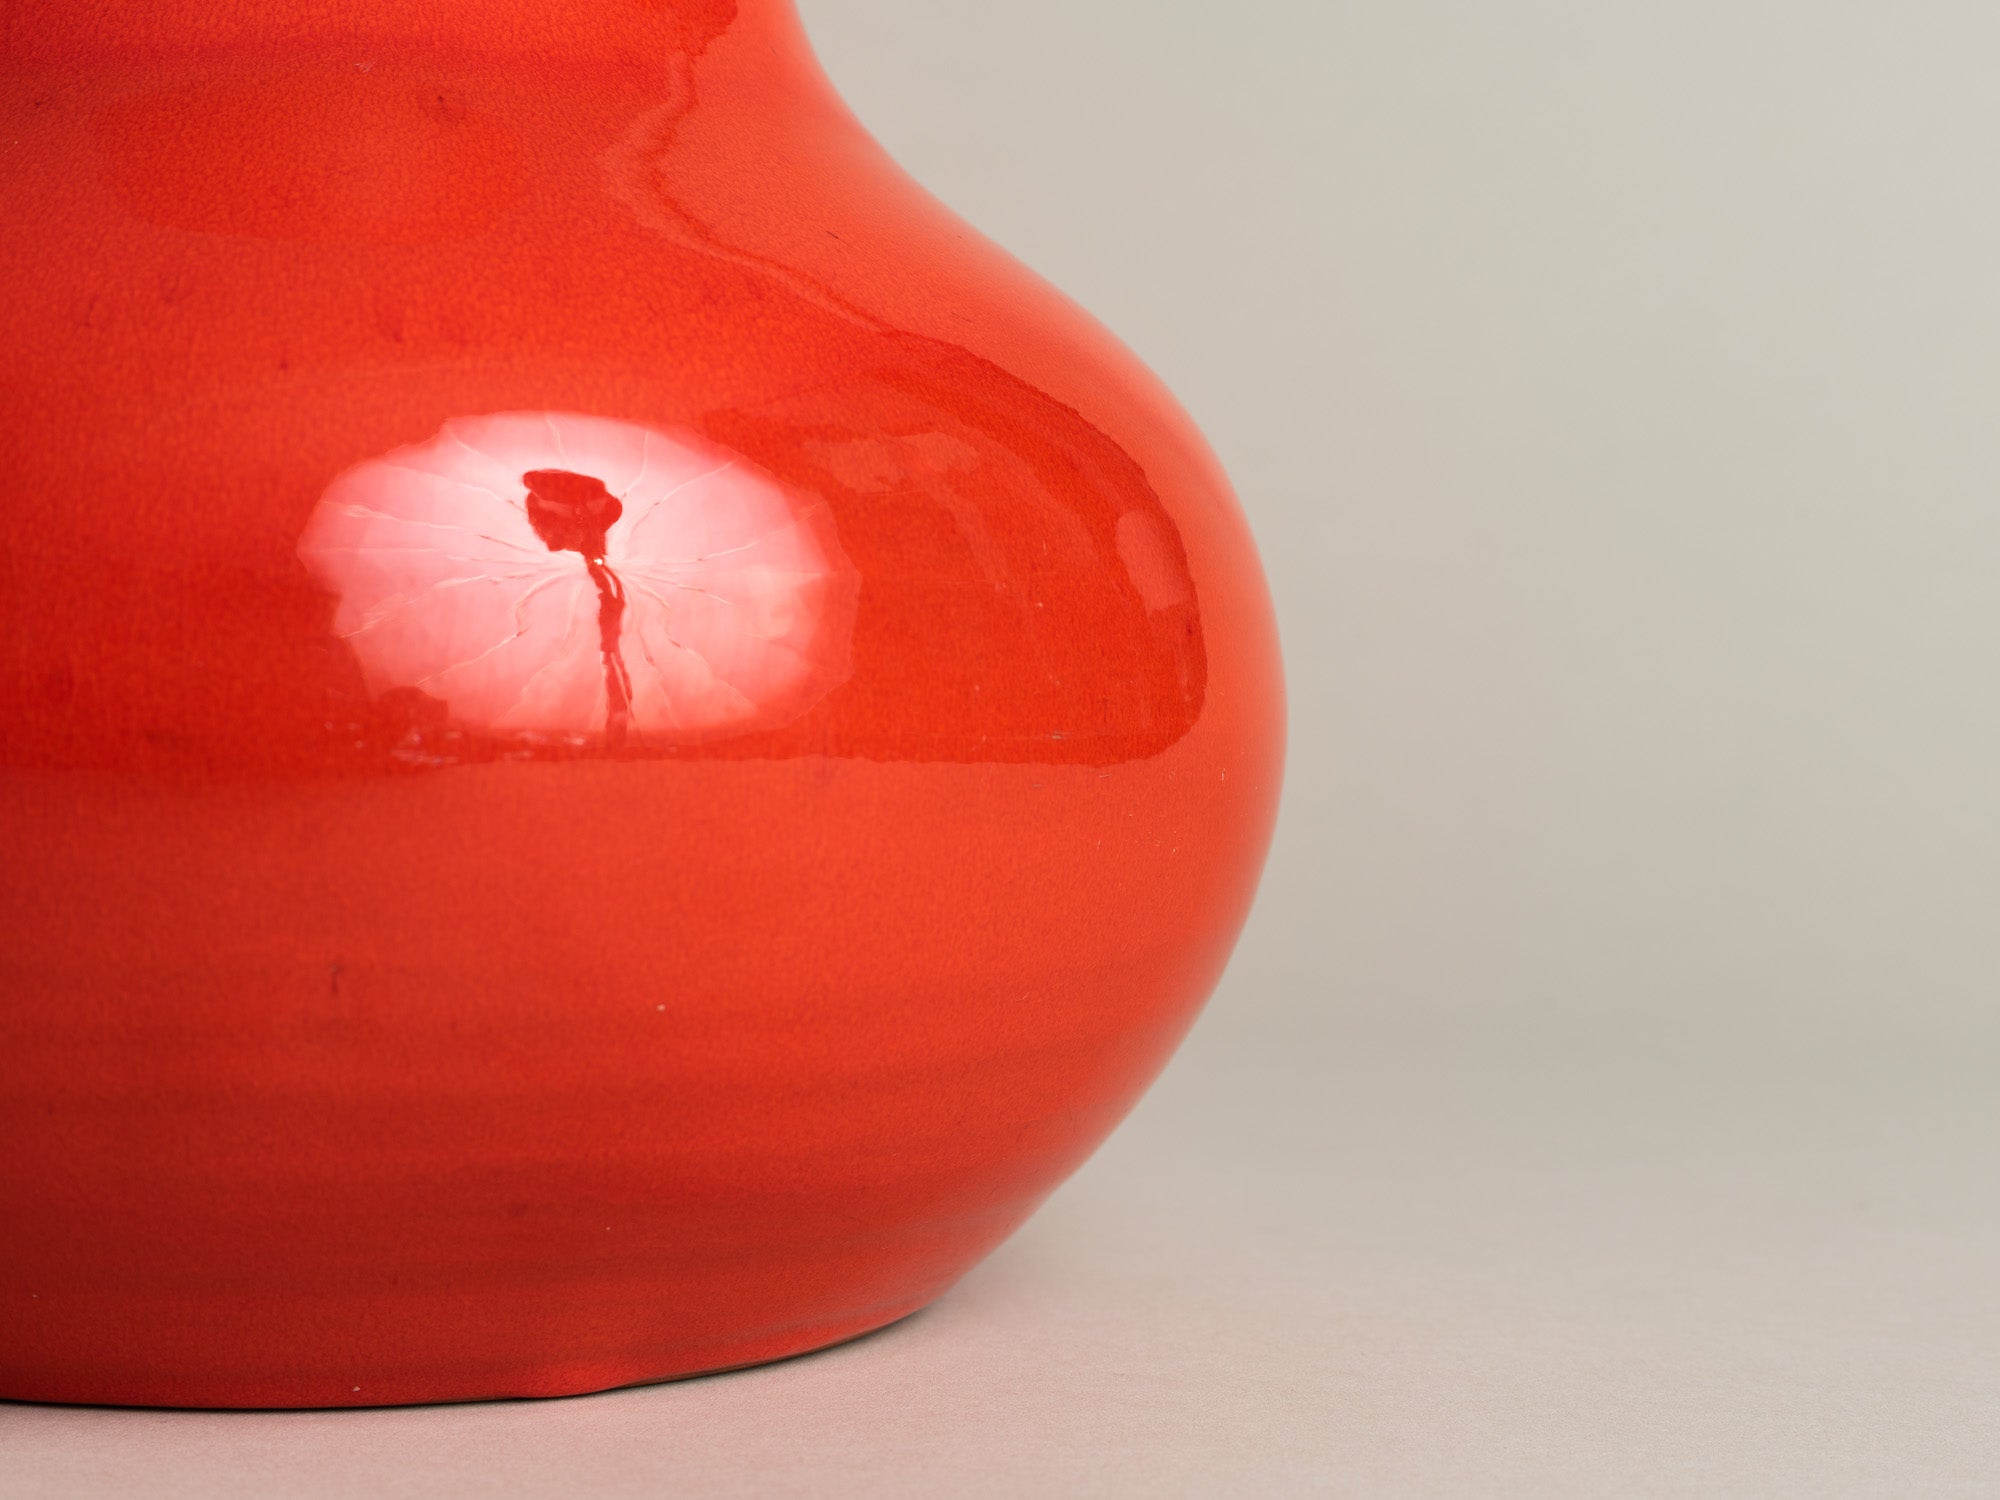 Vase vermillon de sélénium par Robert Picault pour Cerasarda, Italie (années 1960)..Vermilion vase by Robert Picault for Cerasarda, Italy (1960)